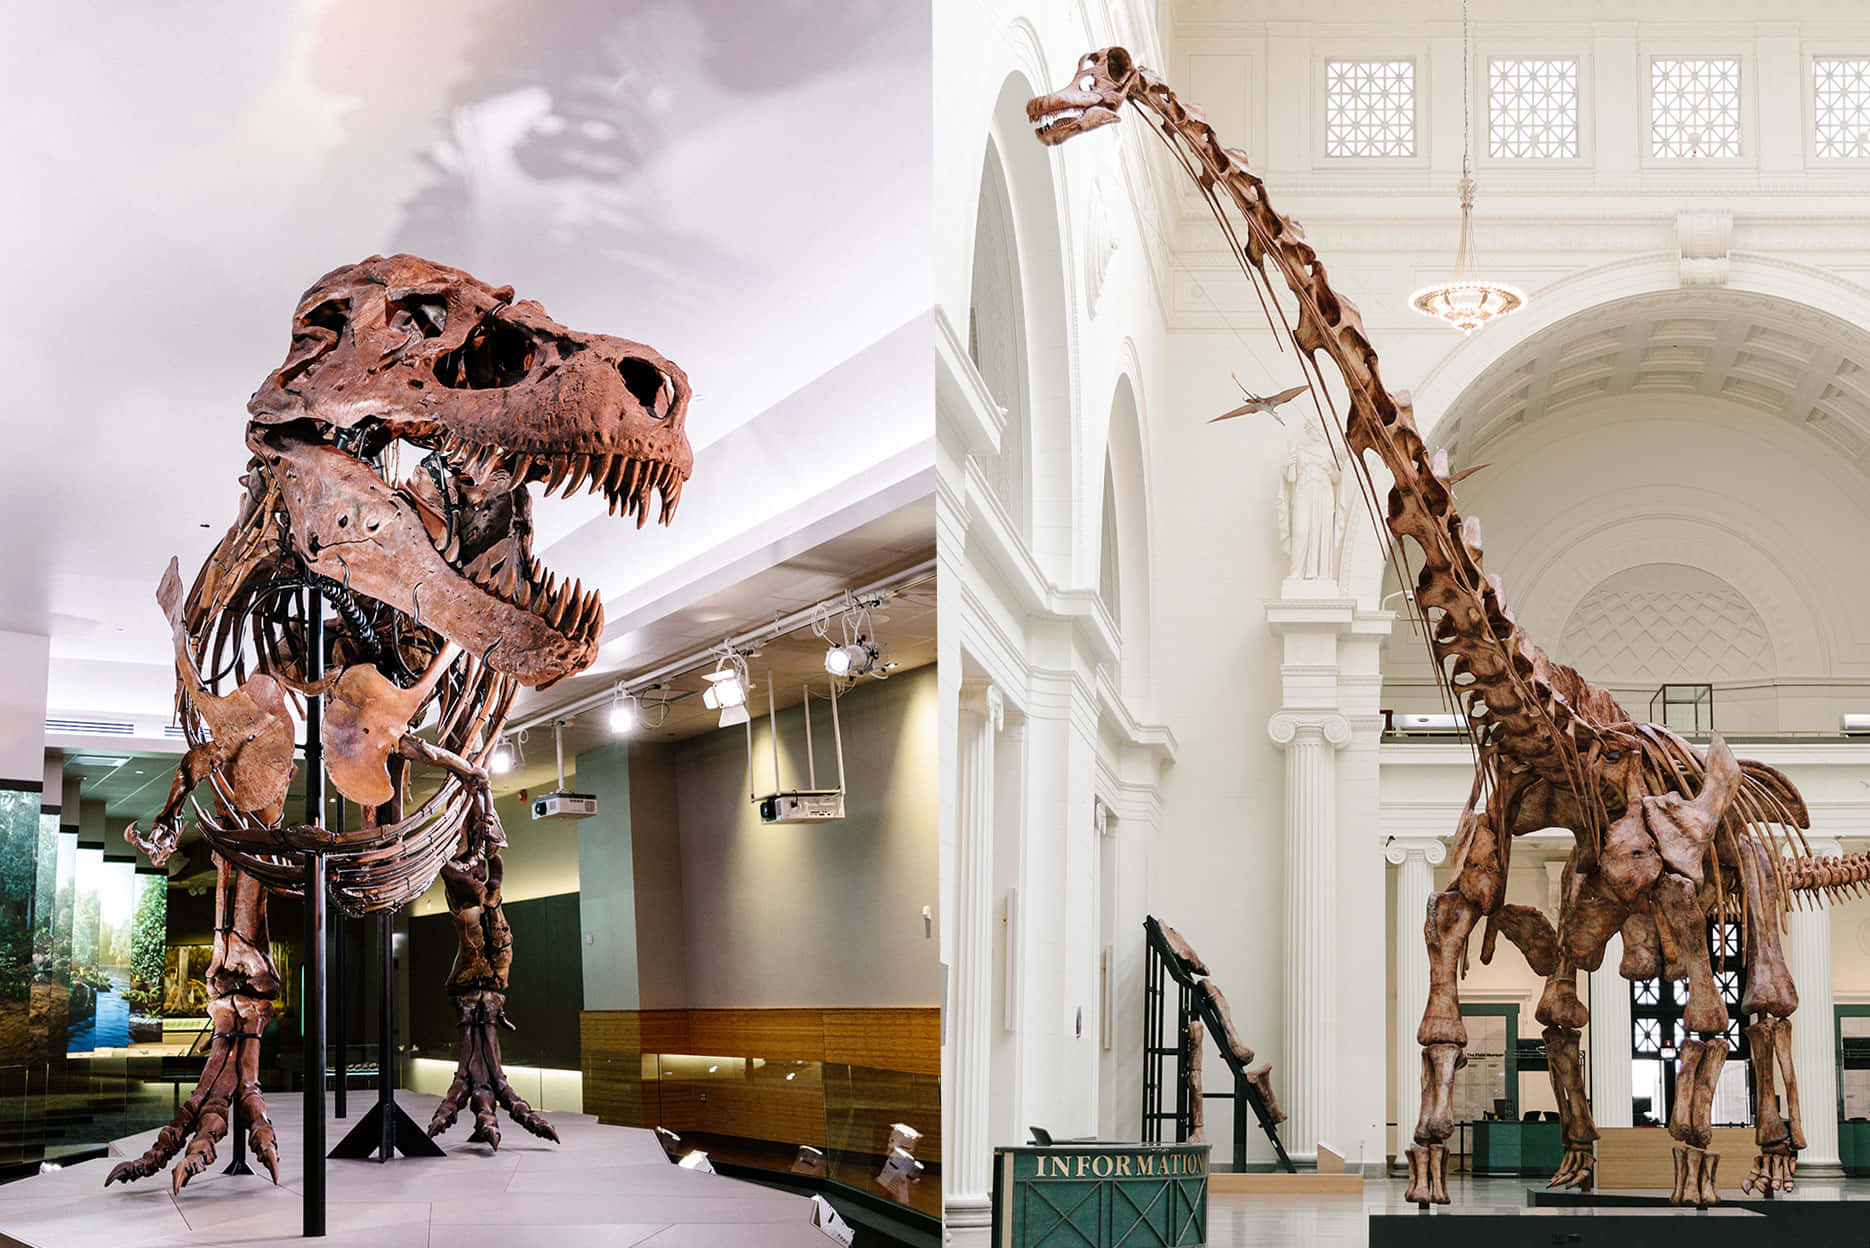 Sig to billeder af et dinosaur skelet i et museum.